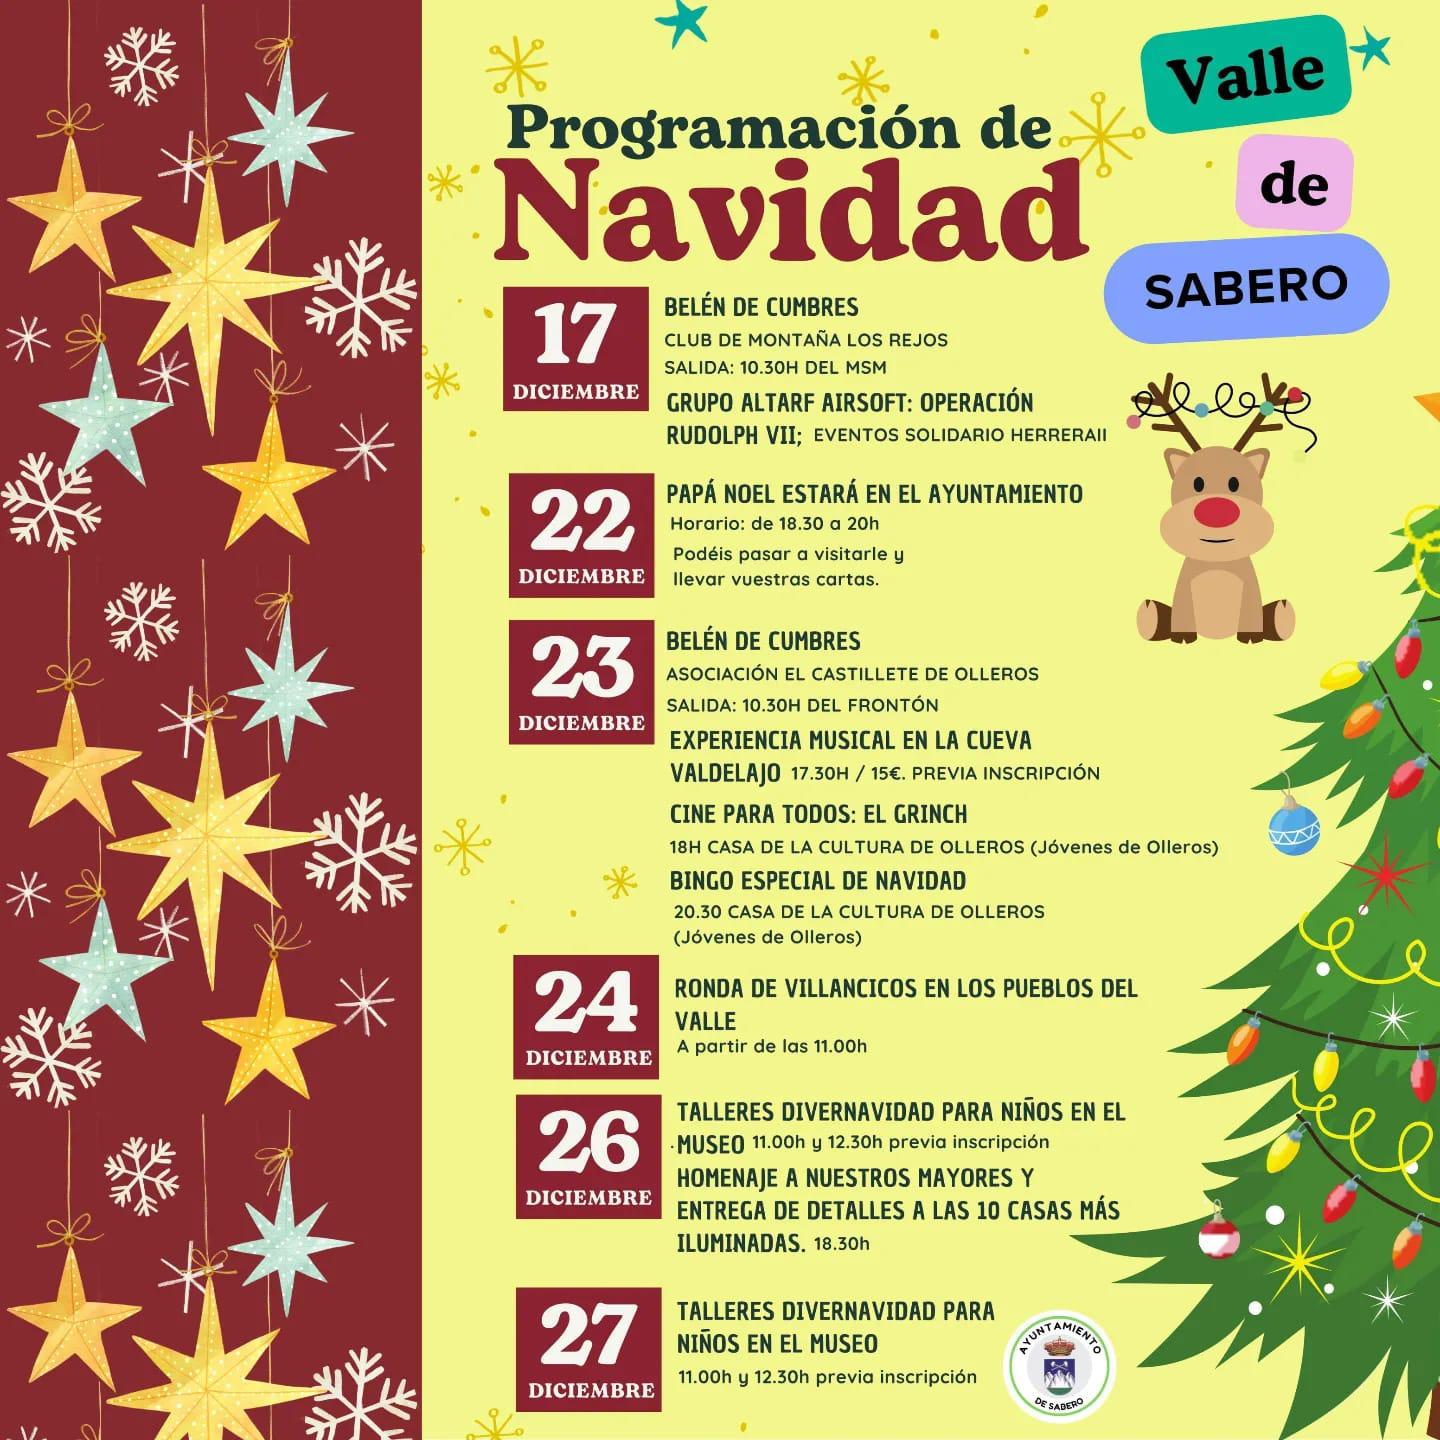 Navidad Valle de Sabero.0